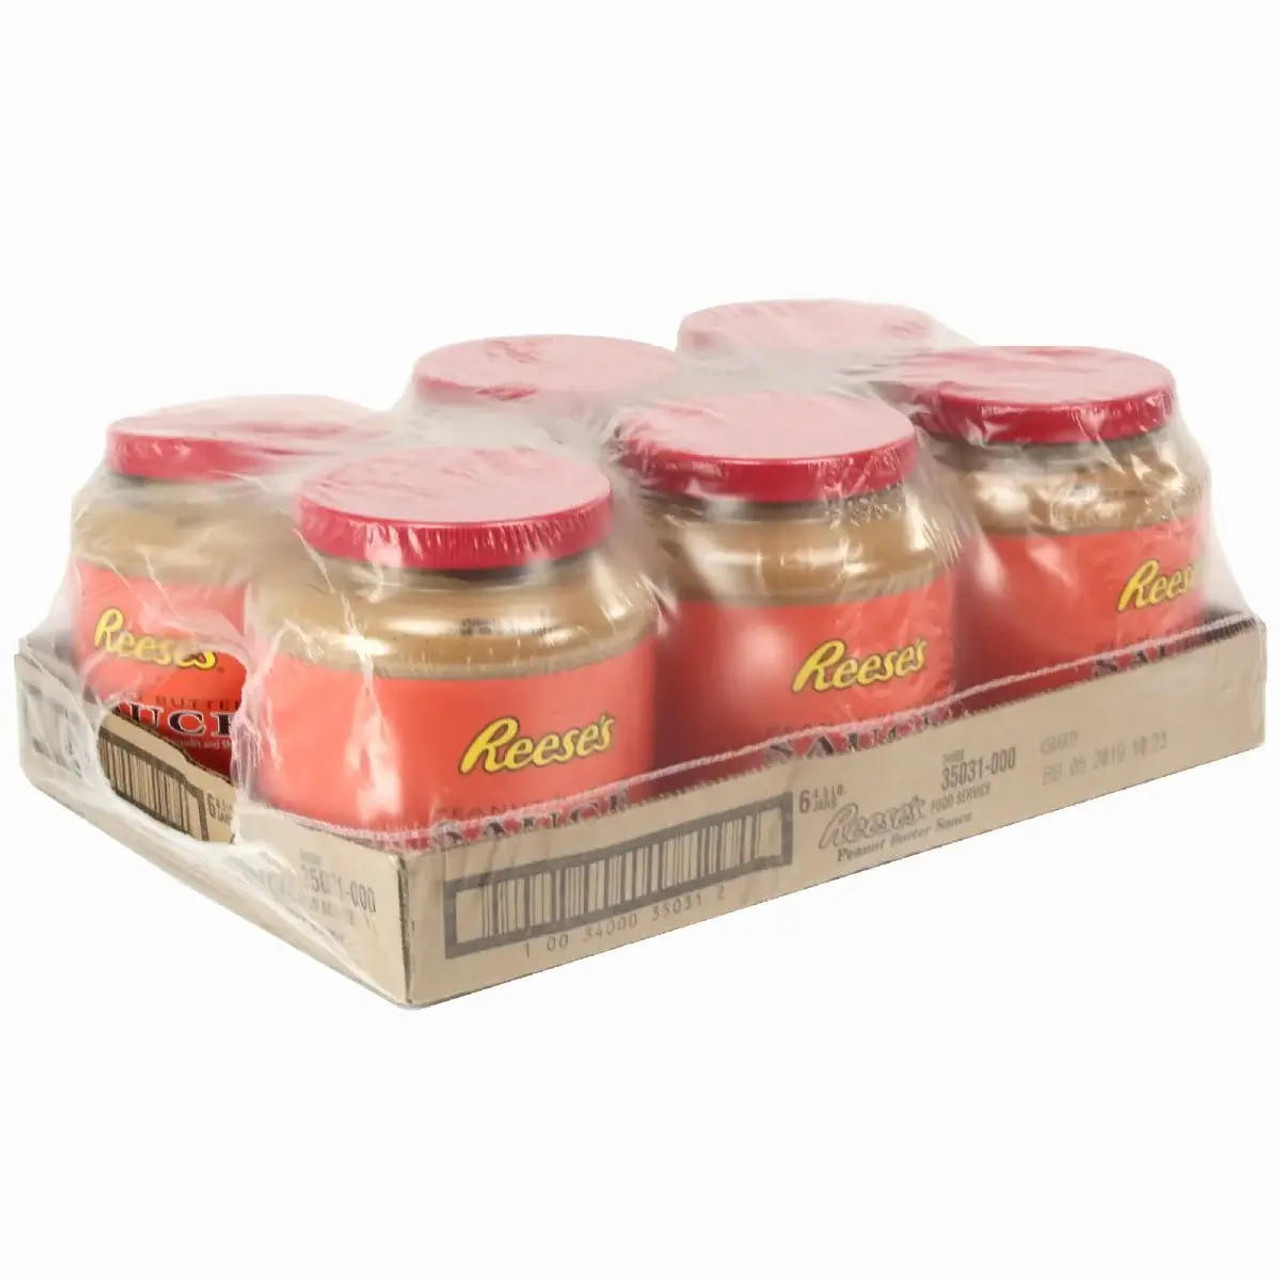  REESE'S Peanut Butter Sauce Jar - 4.5 Lb/2.04 Kg (6/case) 